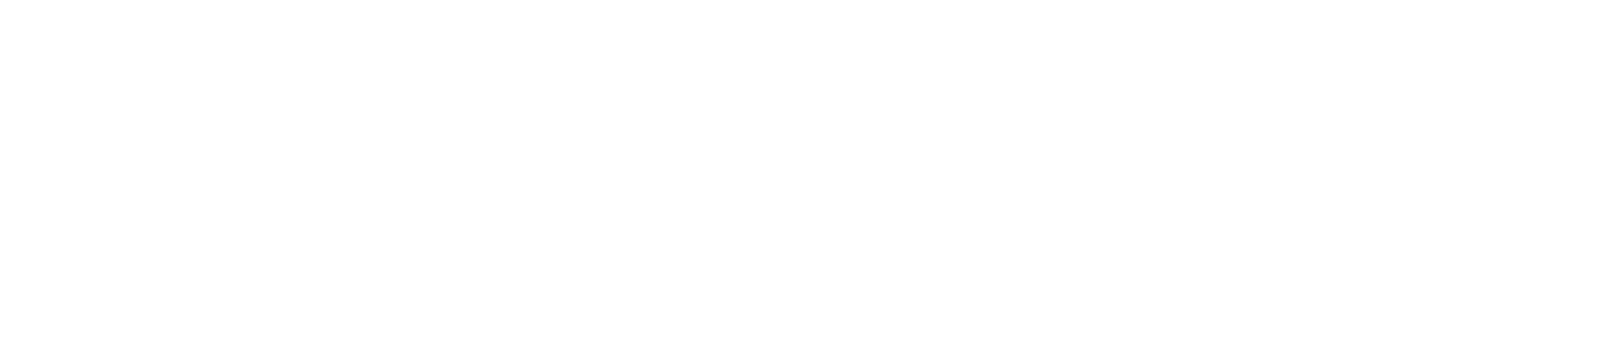 中建君联建筑材料管理软件商标logo